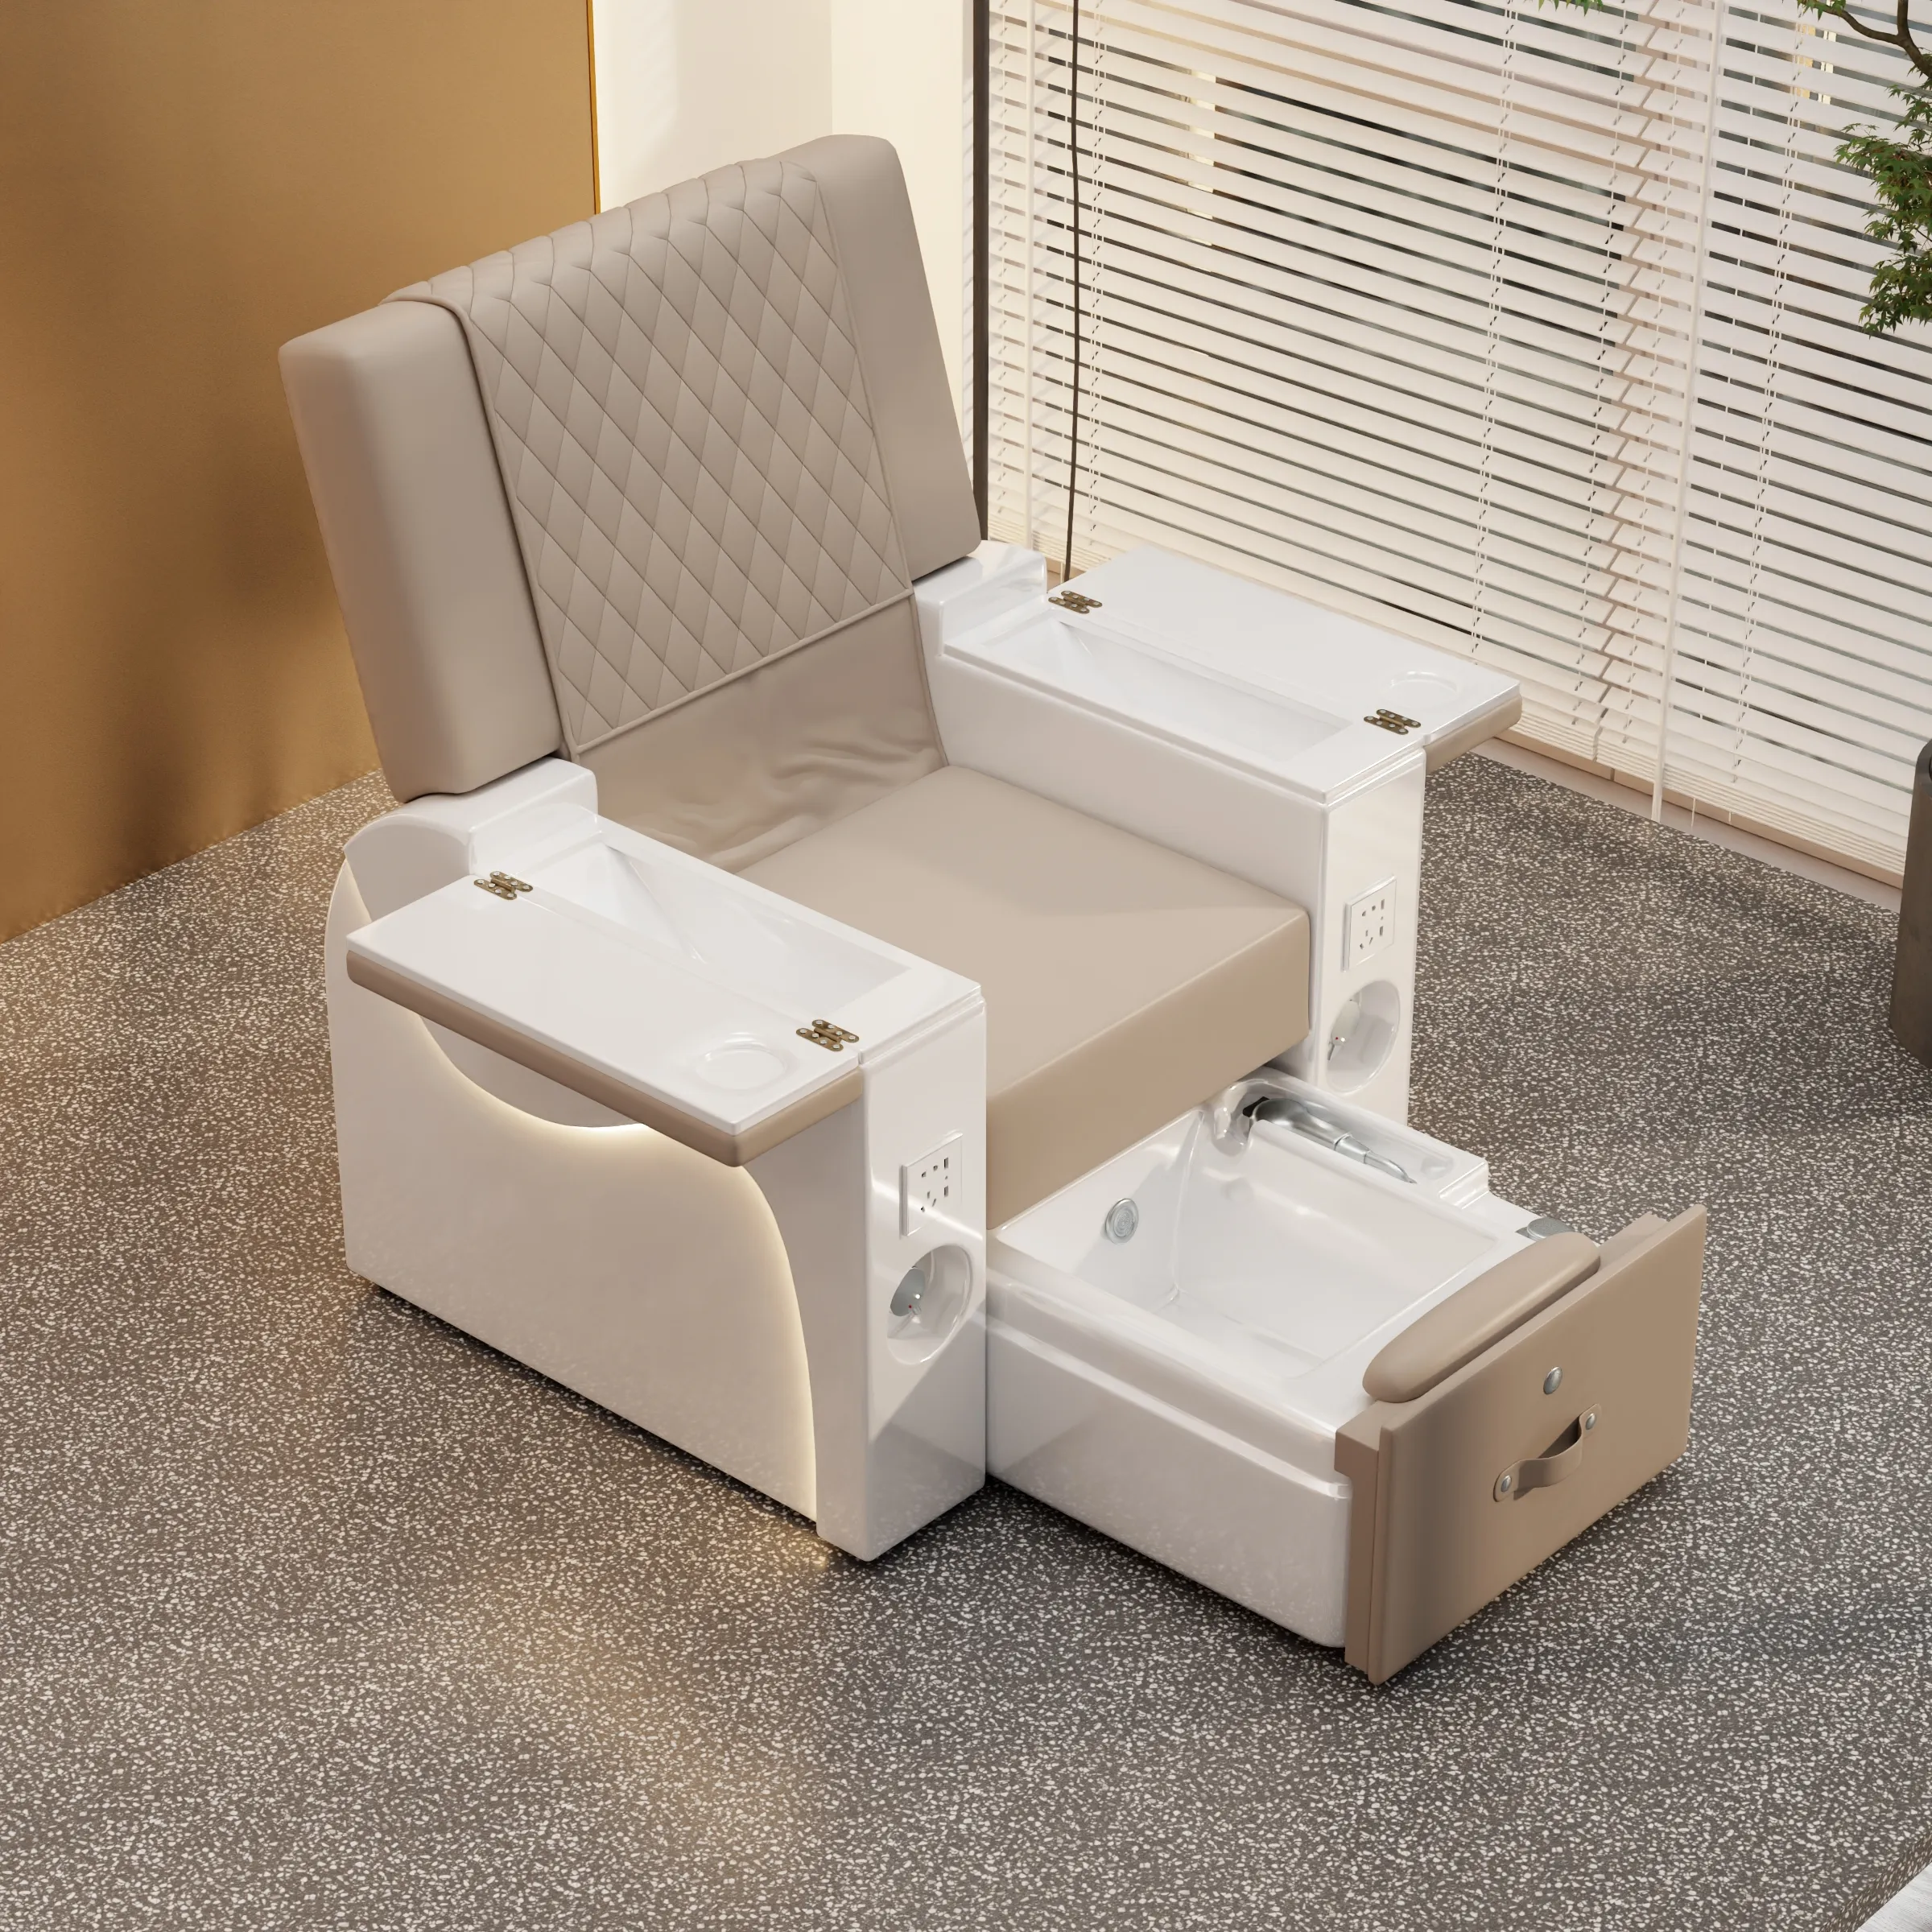 La sedia per Pedicure con schienale invertito elettrico di vendita calda yeyou con luce a LED e Design del modello può personalizzare la sedia per massaggio ai piedi a colori